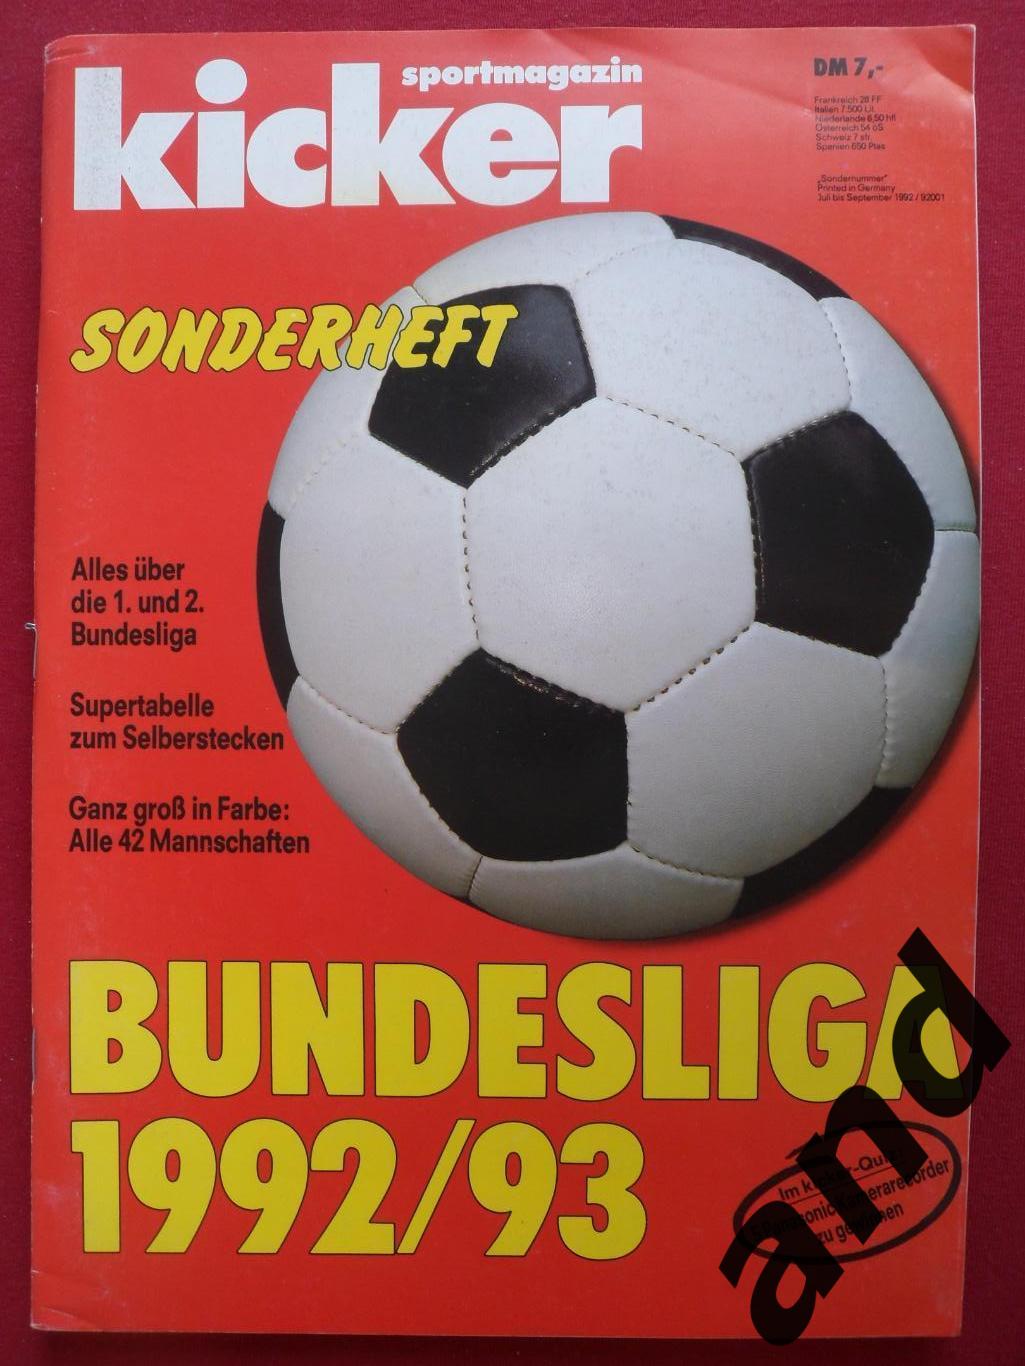 Kicker (спецвыпуск) бундеслига 1992-93